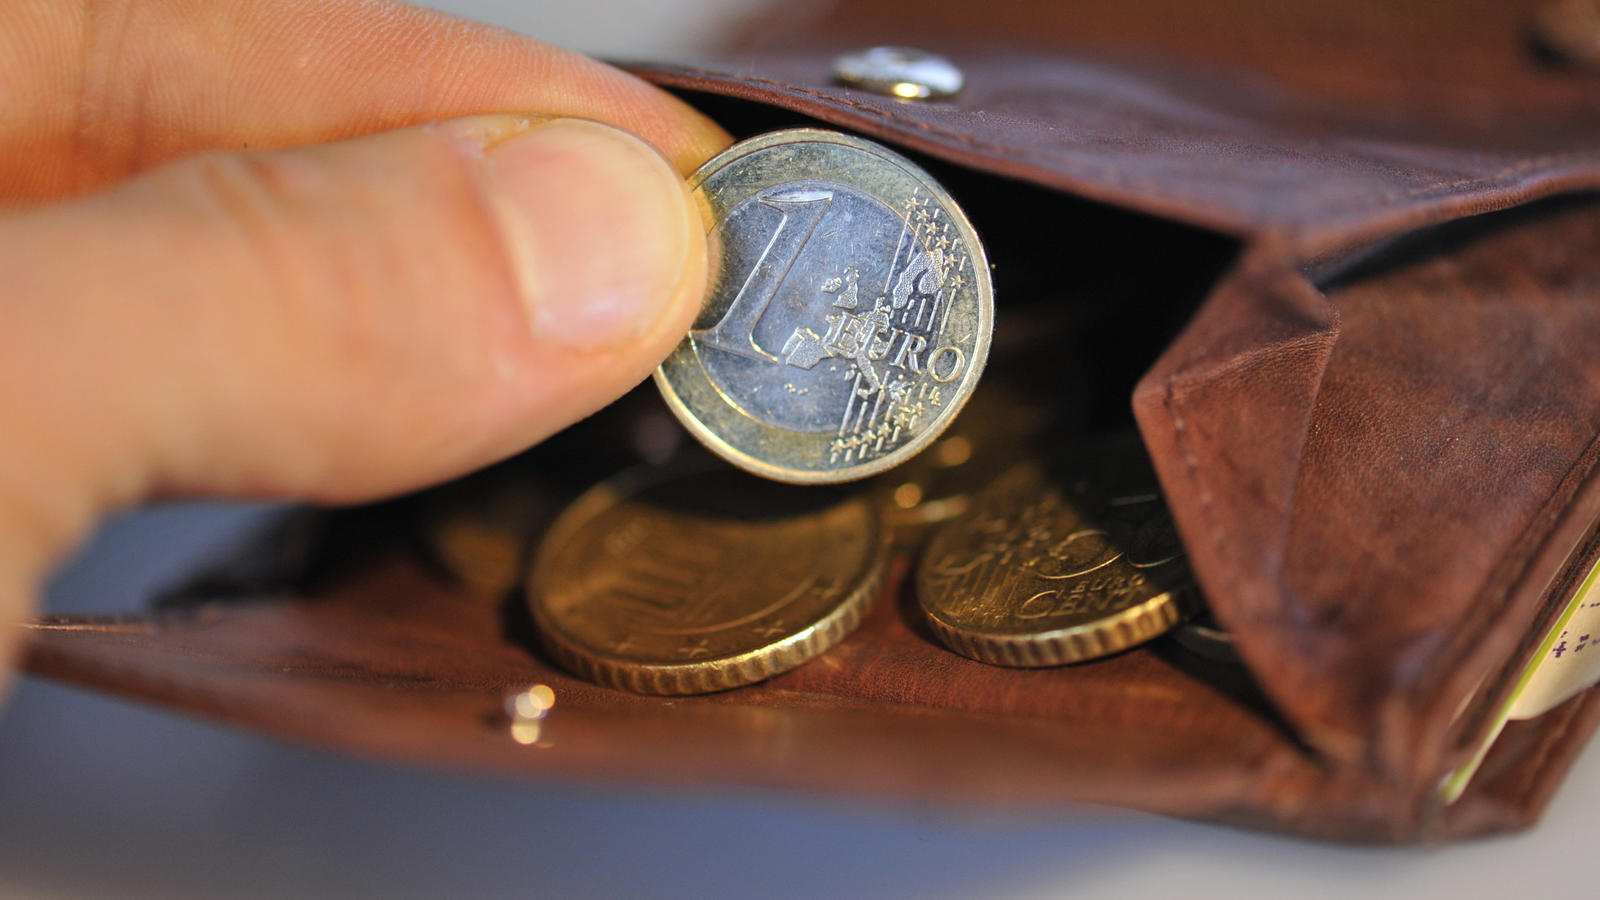 ARCHIV - ILLUSTRATION - Eine Hand nimmt am 22.01.2010 eine Euro-Münze aus einem Geldbörse, in dem sich weitere Münzen befinden. Mehrarbeit lohnt sich für Geringverdiener nicht immer. (zu dpa «Studie: Mehrarbeit rentiert sich für Geringverdiener nicht